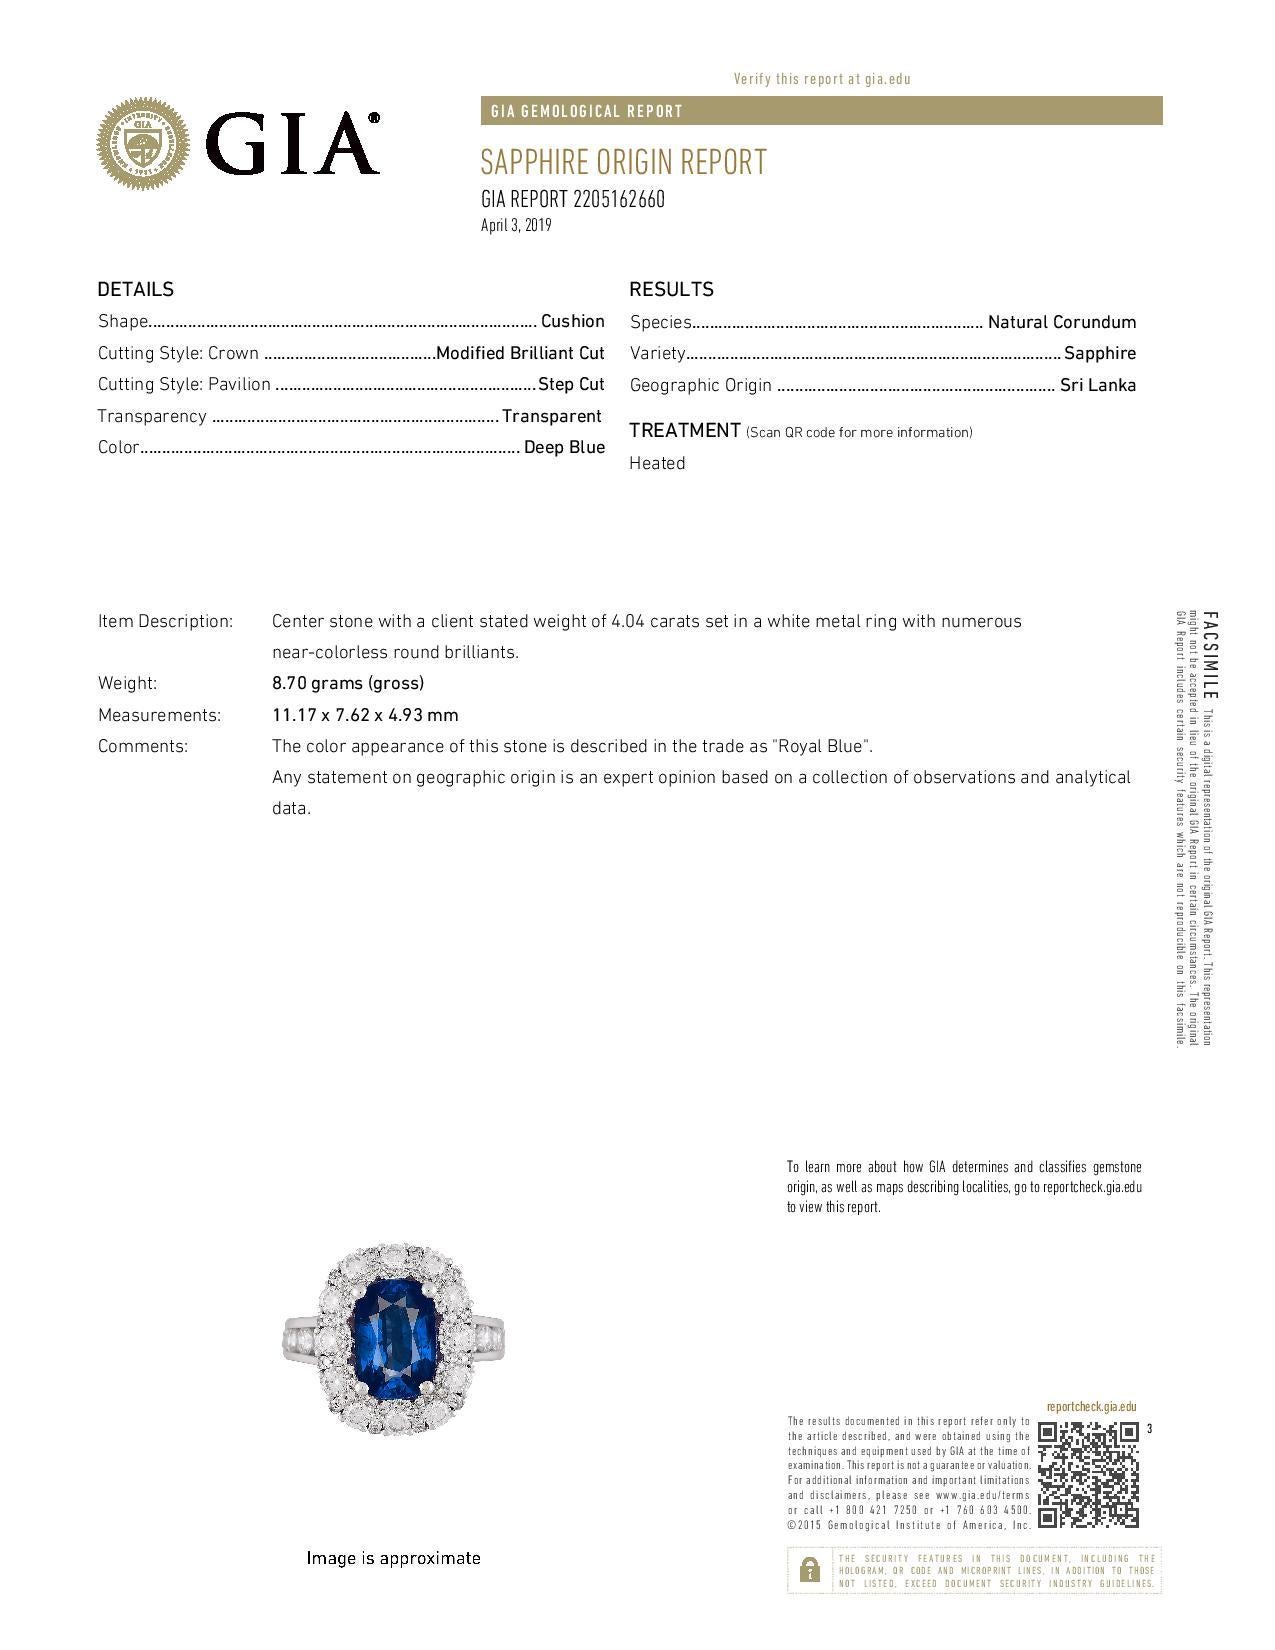 Women's DiamondTown GIA Certified 4.04 Carat Cushion Cut Fine Sapphire Ring